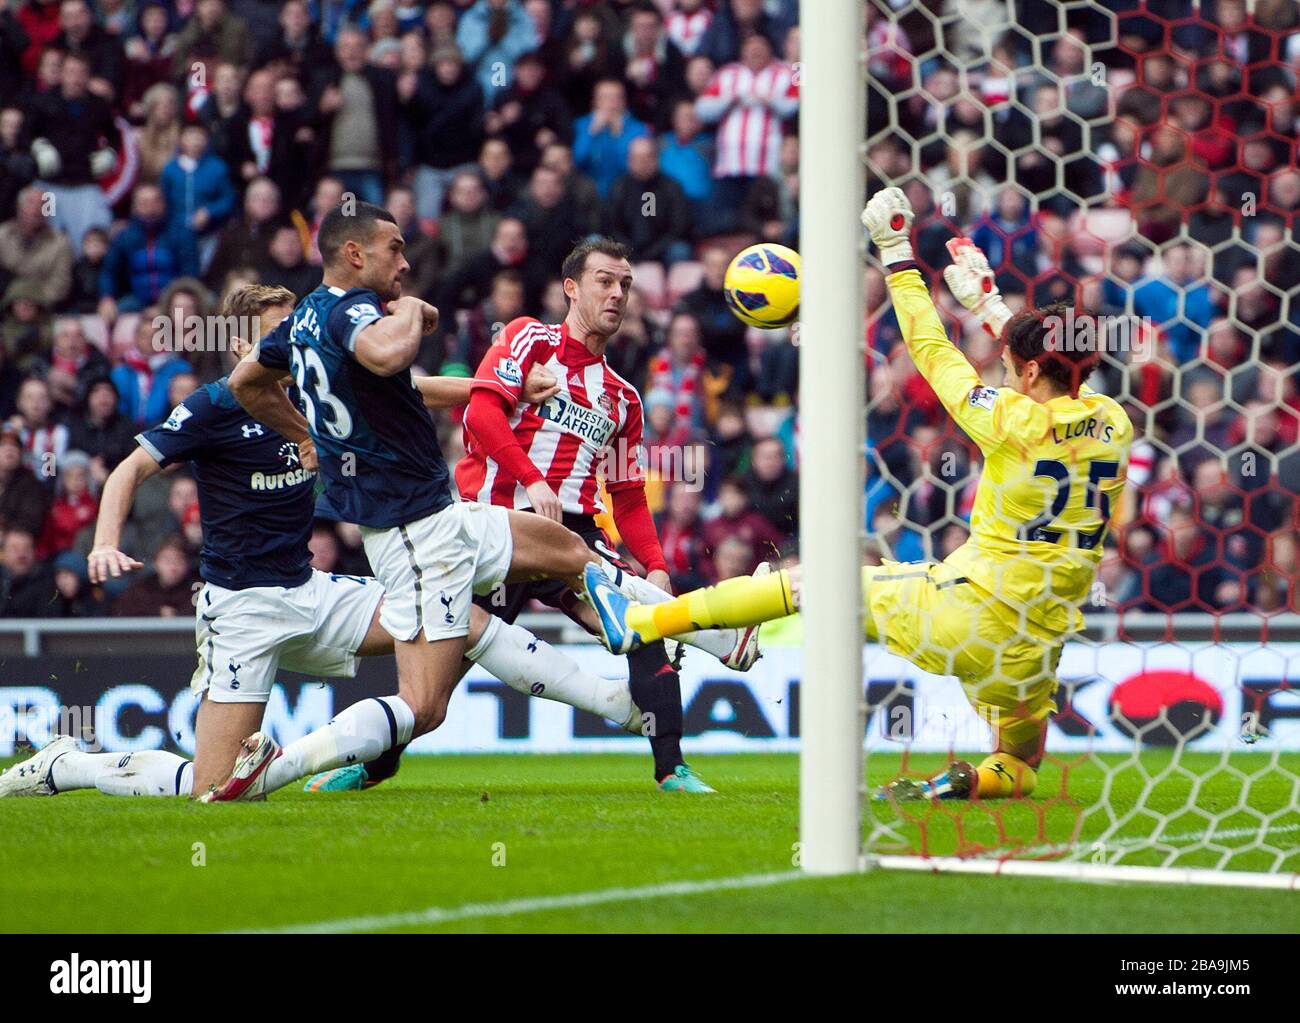 Sunderland's Steven Fletcher has a shot on goal Stock Photo